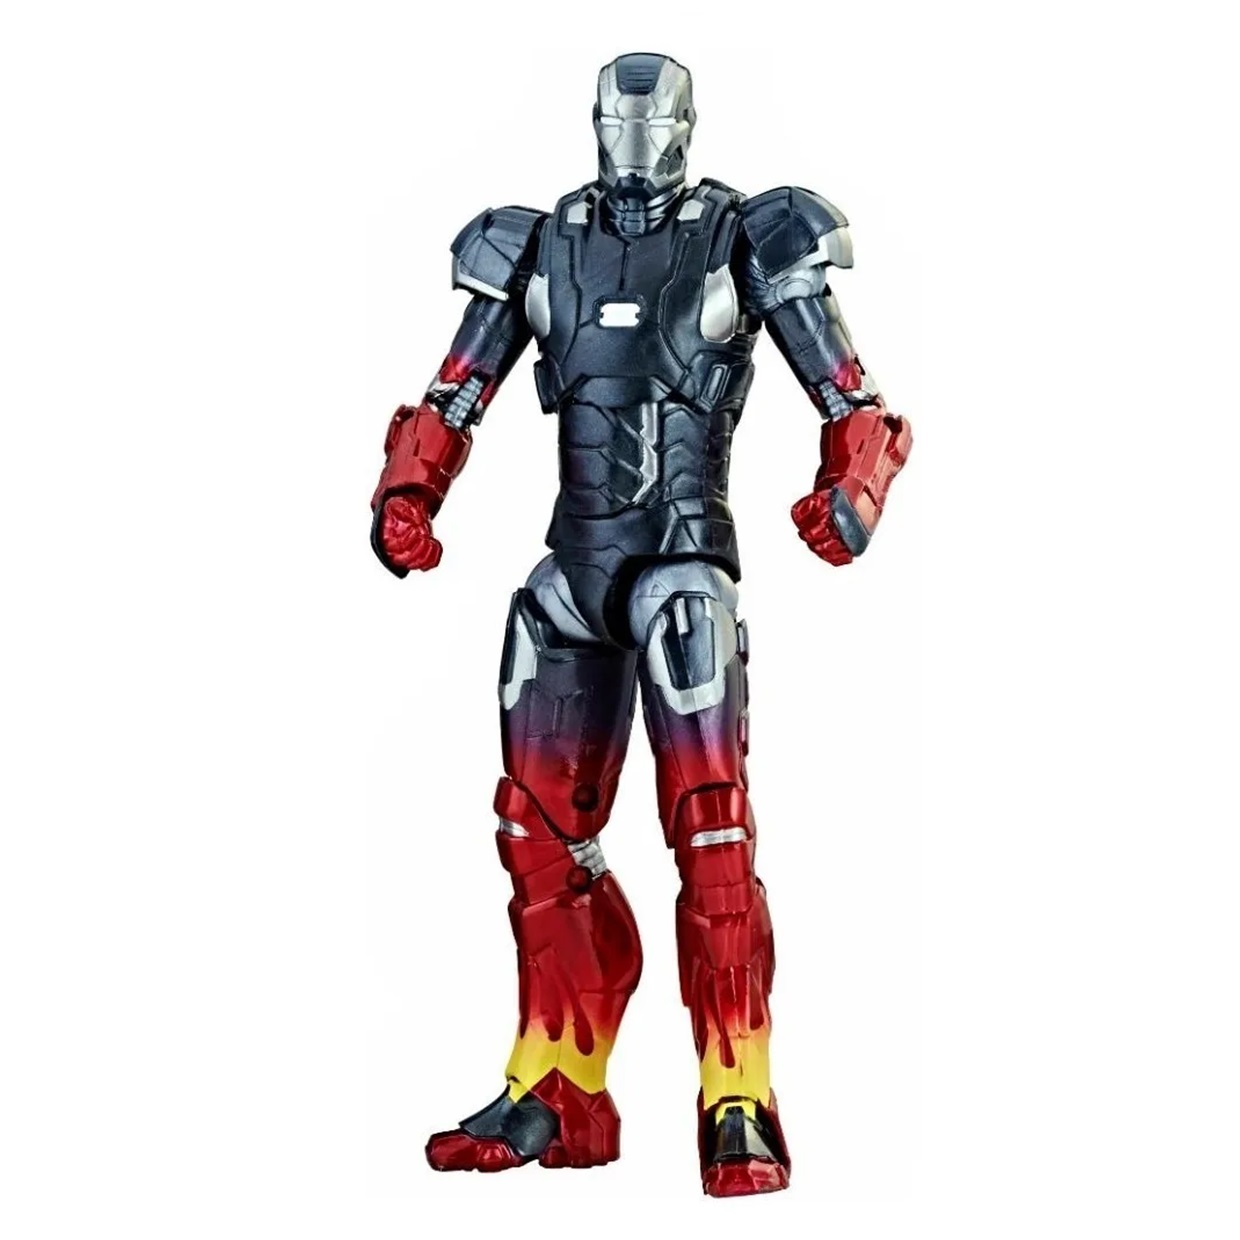 Pack Iron Man 3, Pepper Potts, Mandarin Marvel Legends 10th